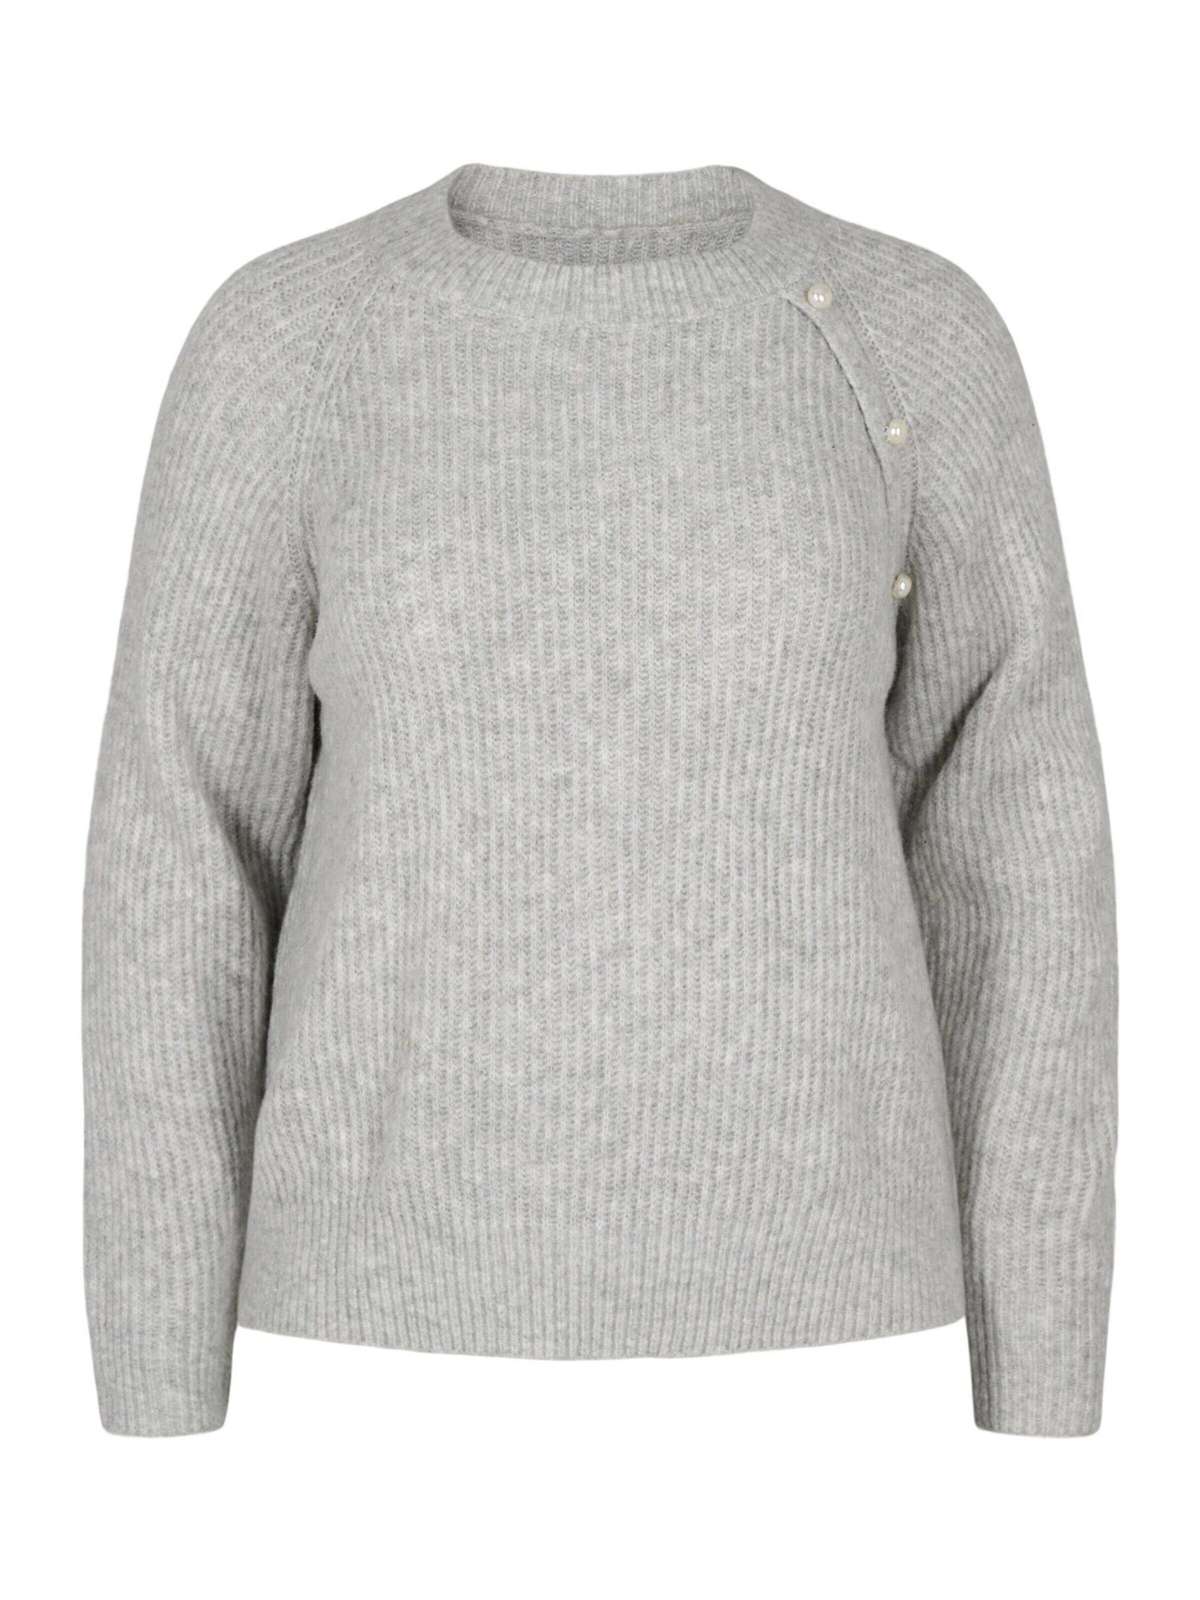 Вязаный свитер (1 шт.) бисер